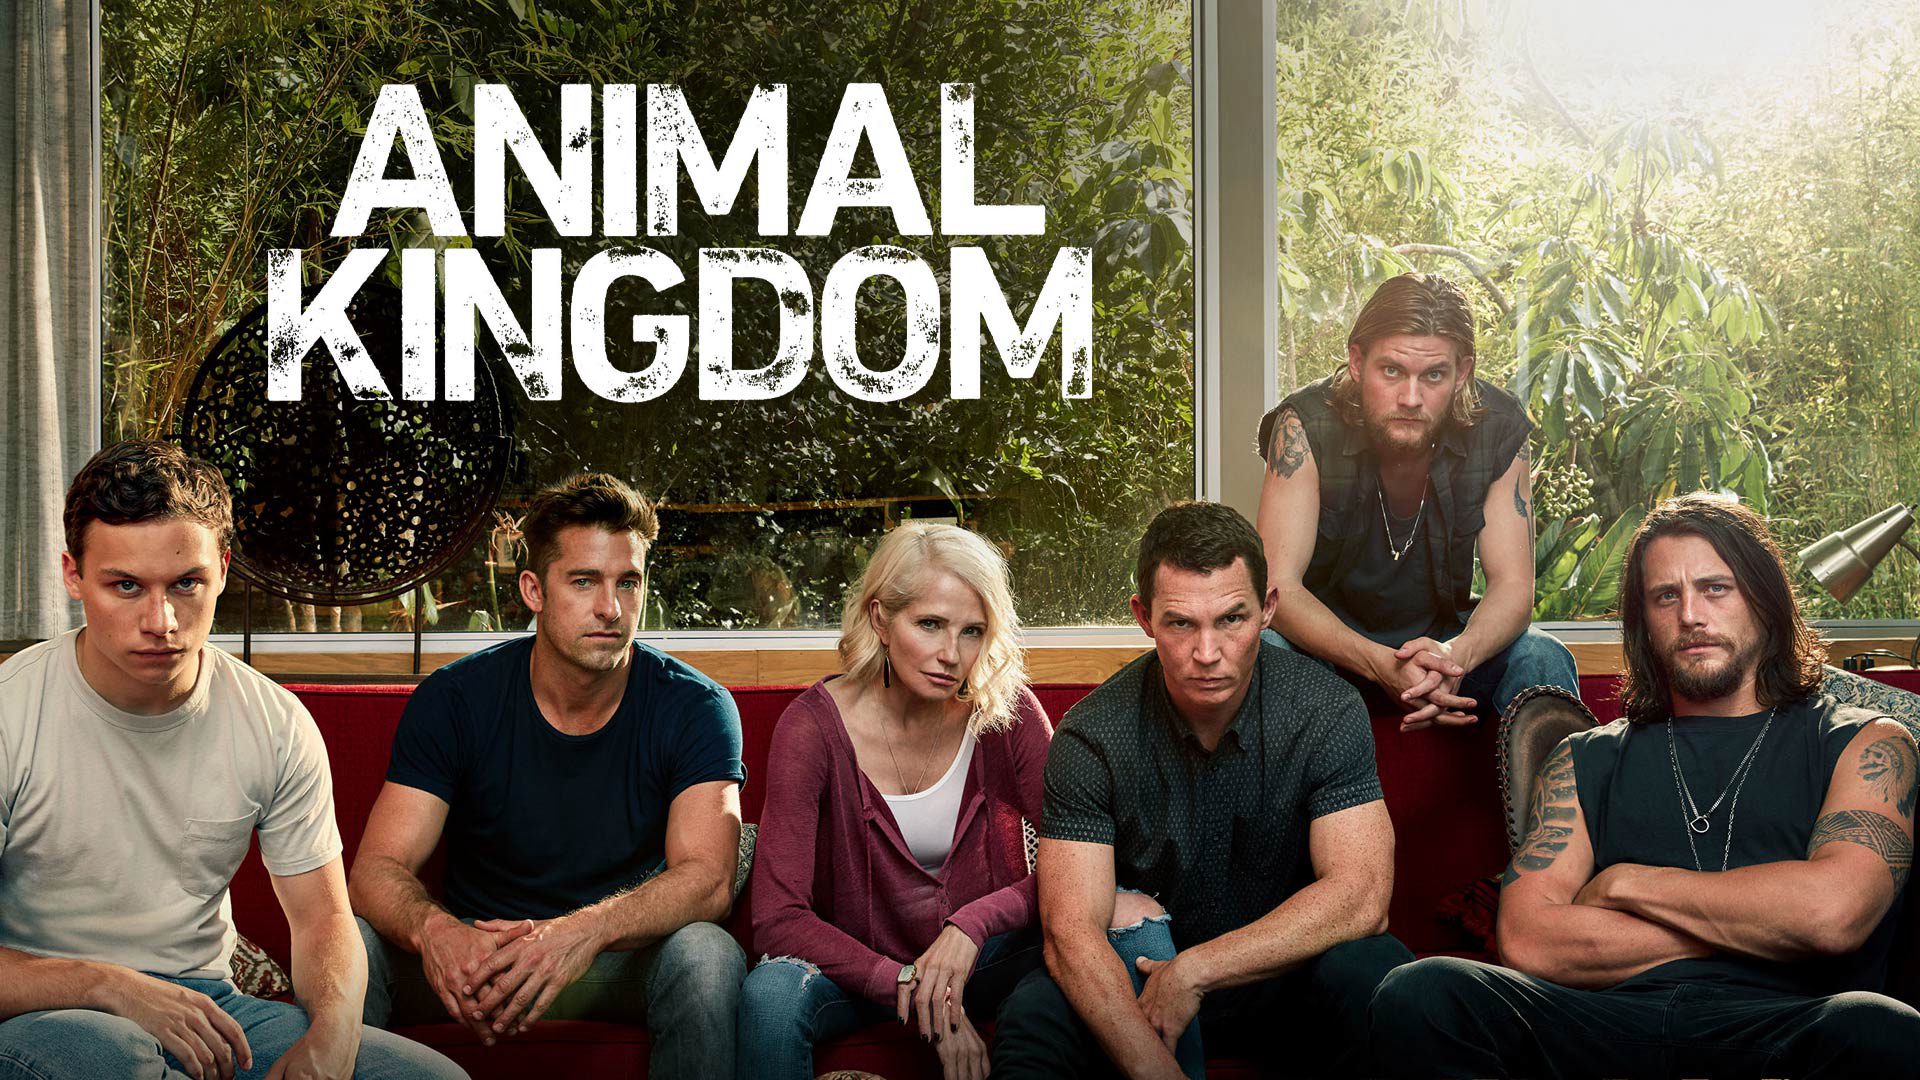 Vương quốc động vật (Phần 2) - Animal Kingdom (Season 2) (2017)